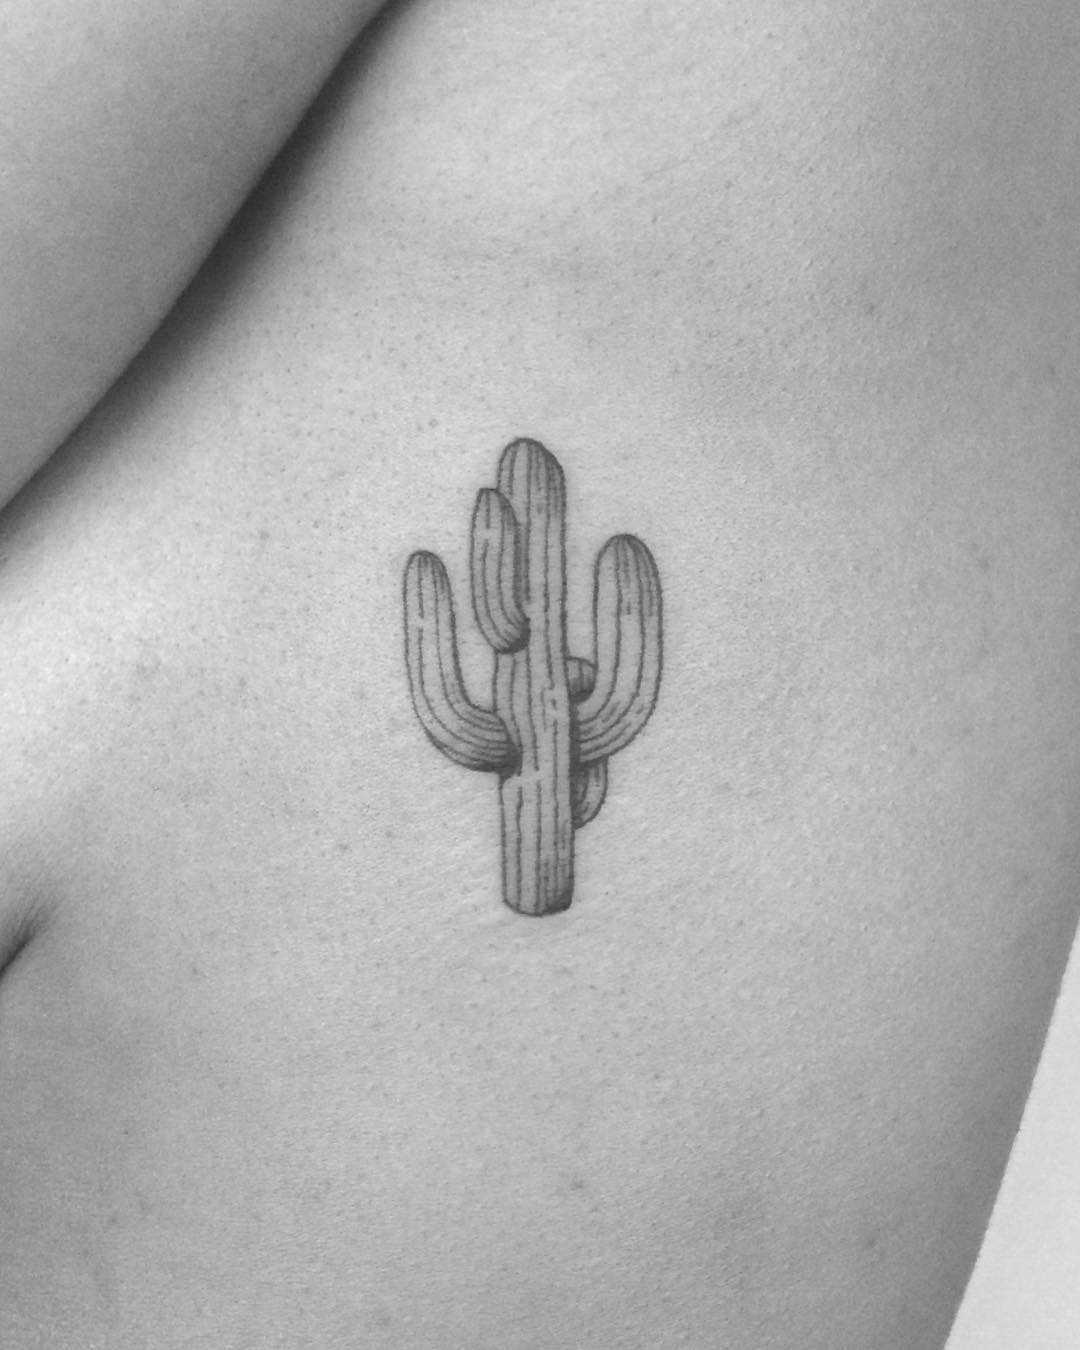 Minimalist cactus tattoo on the rib cage